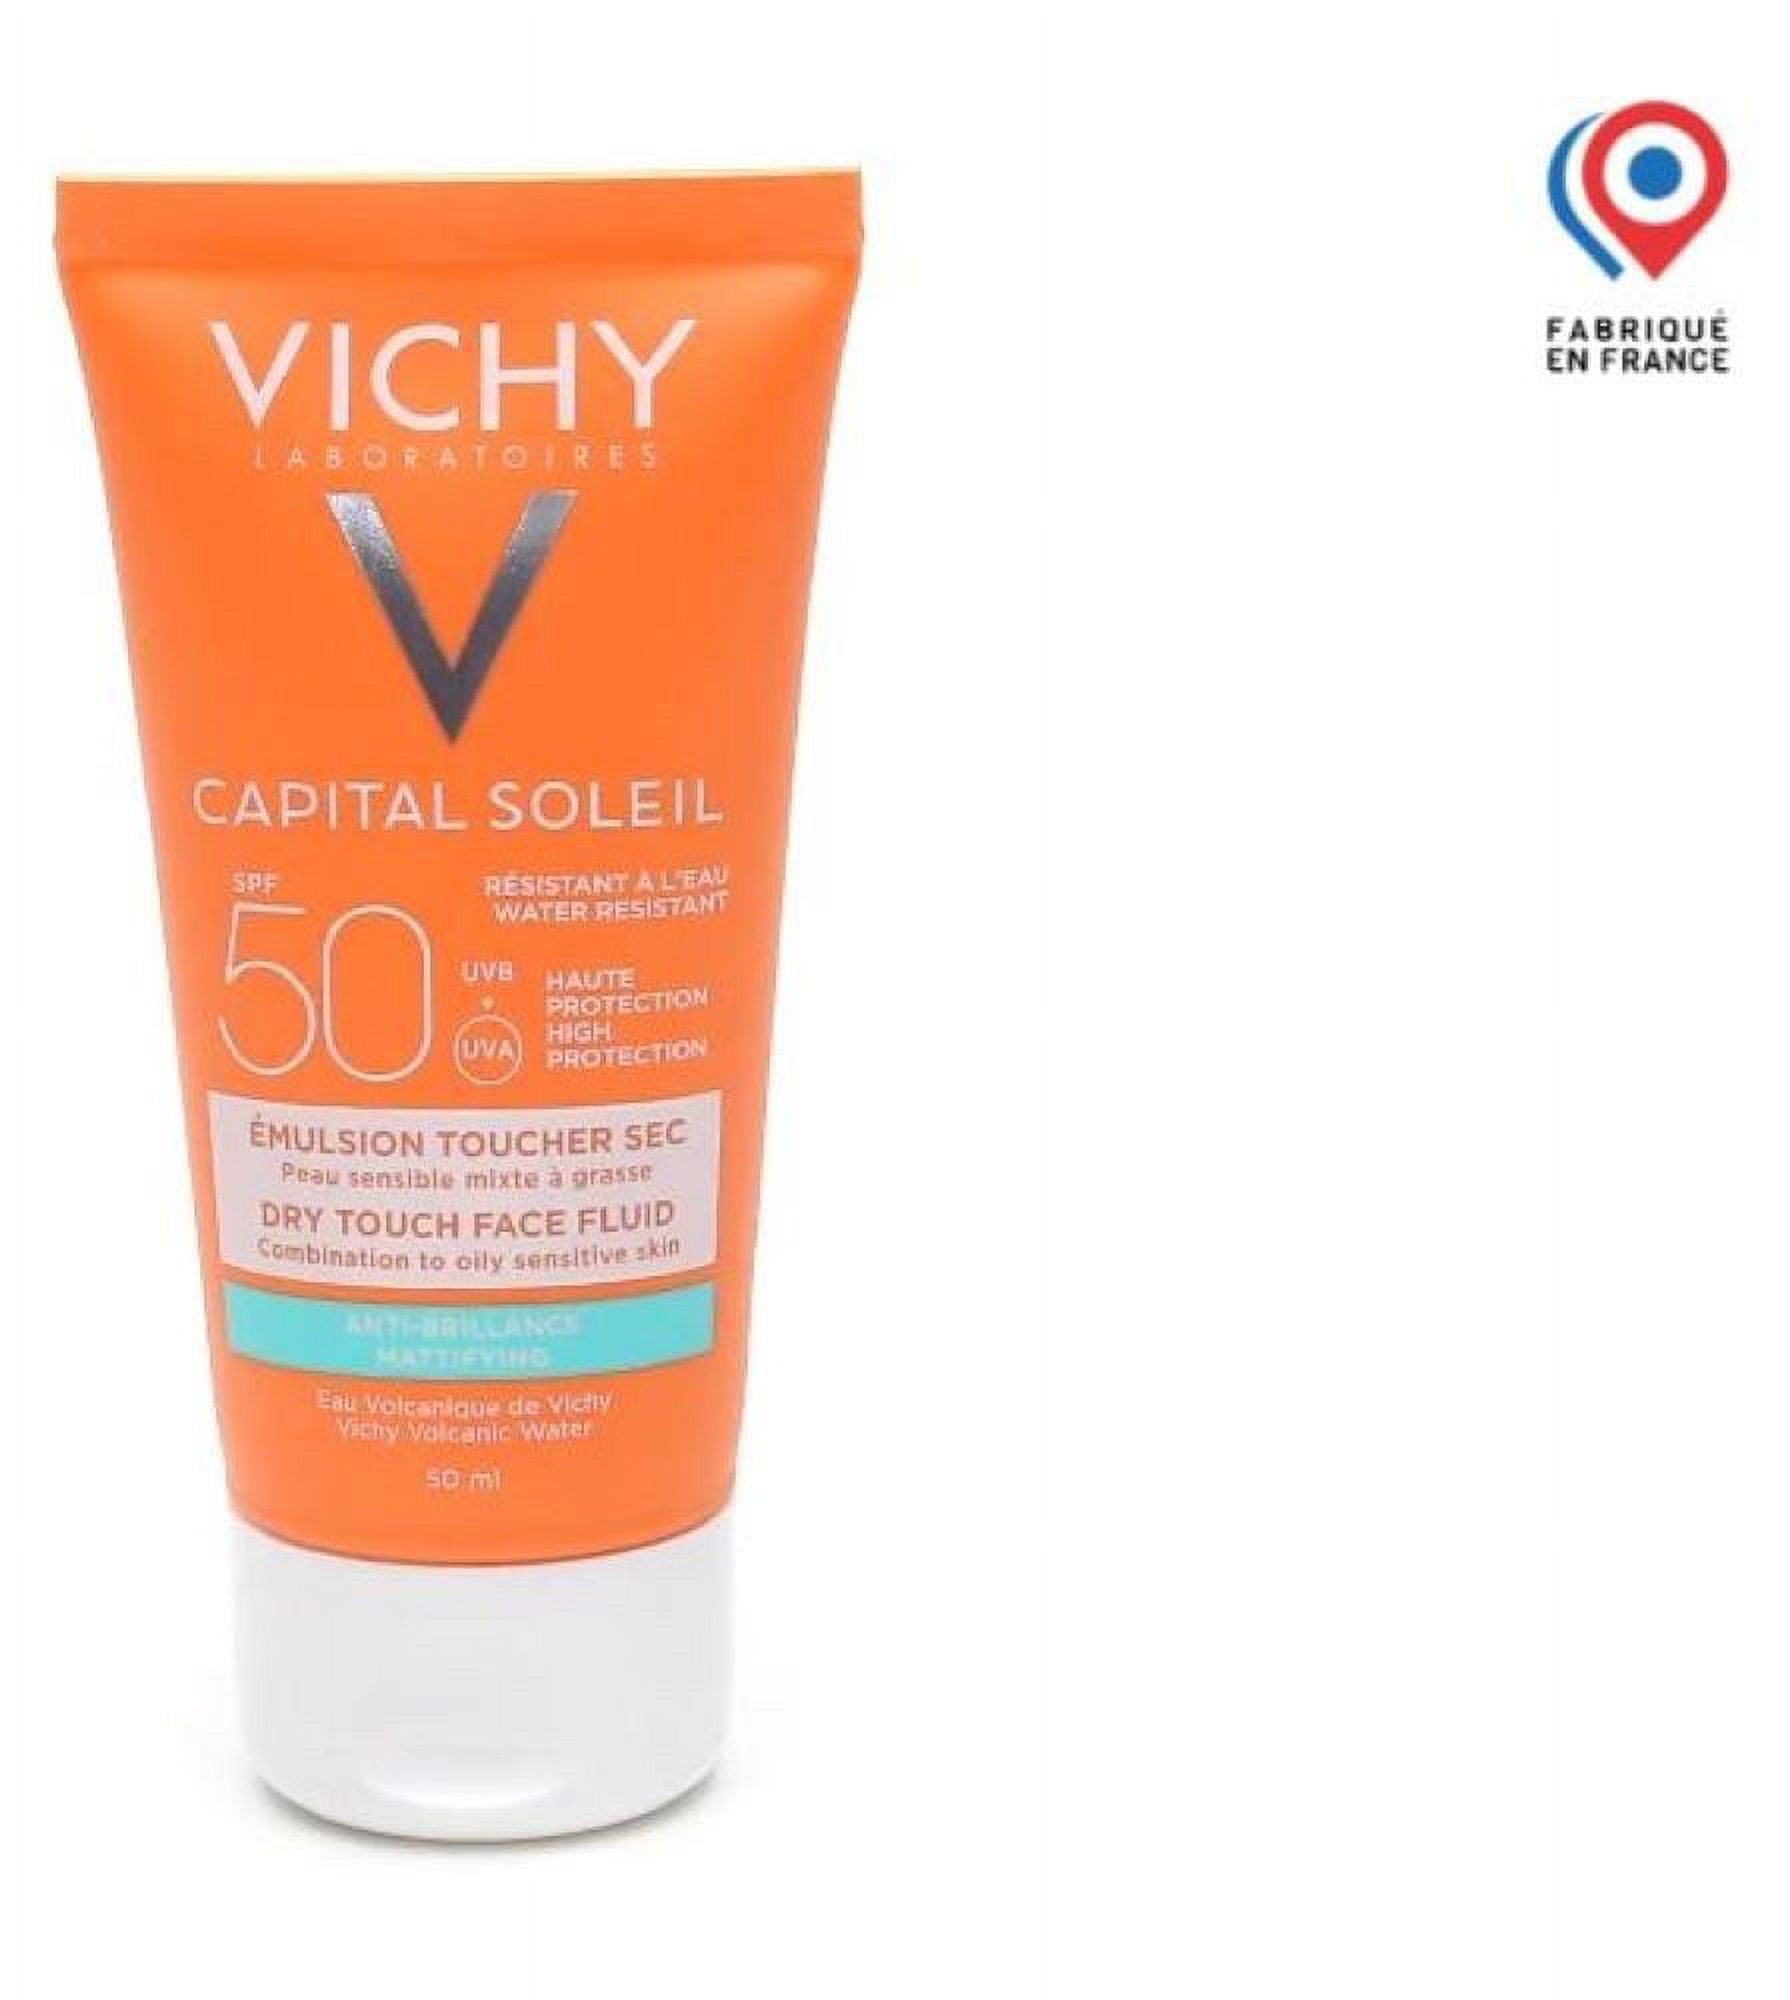 Vichy capital ideal soleil spf 50. Vichy помада для губ spf50. Vichy vapital Soleil.